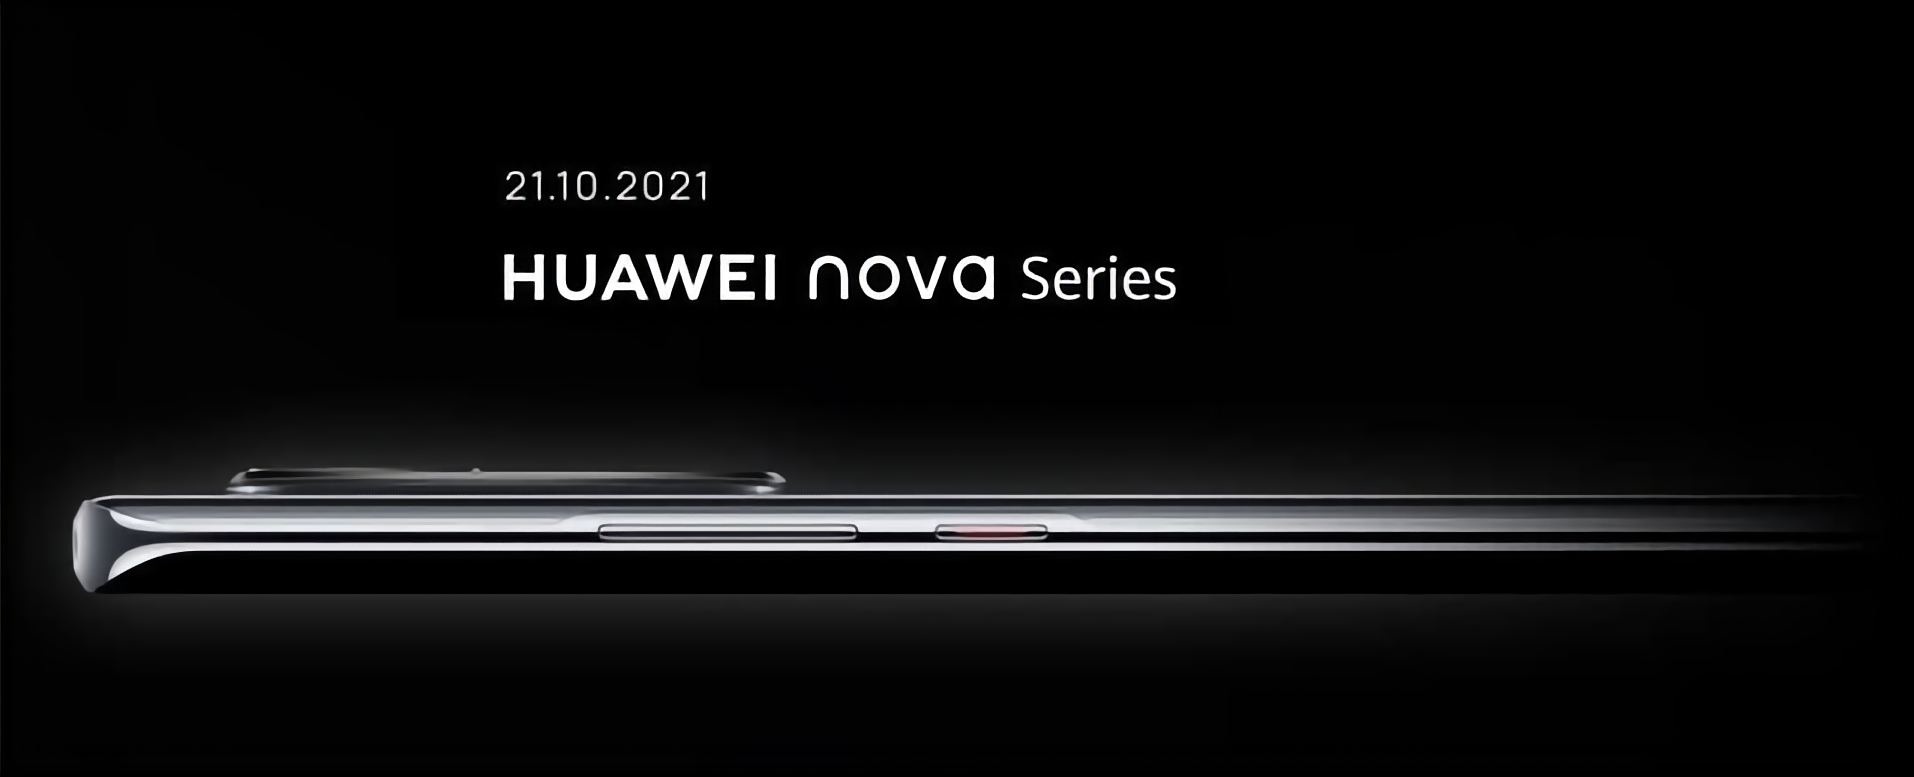 Le Huawei Nova 9 et le Huawei Nova 8i seront lancés en Europe le 21 octobre